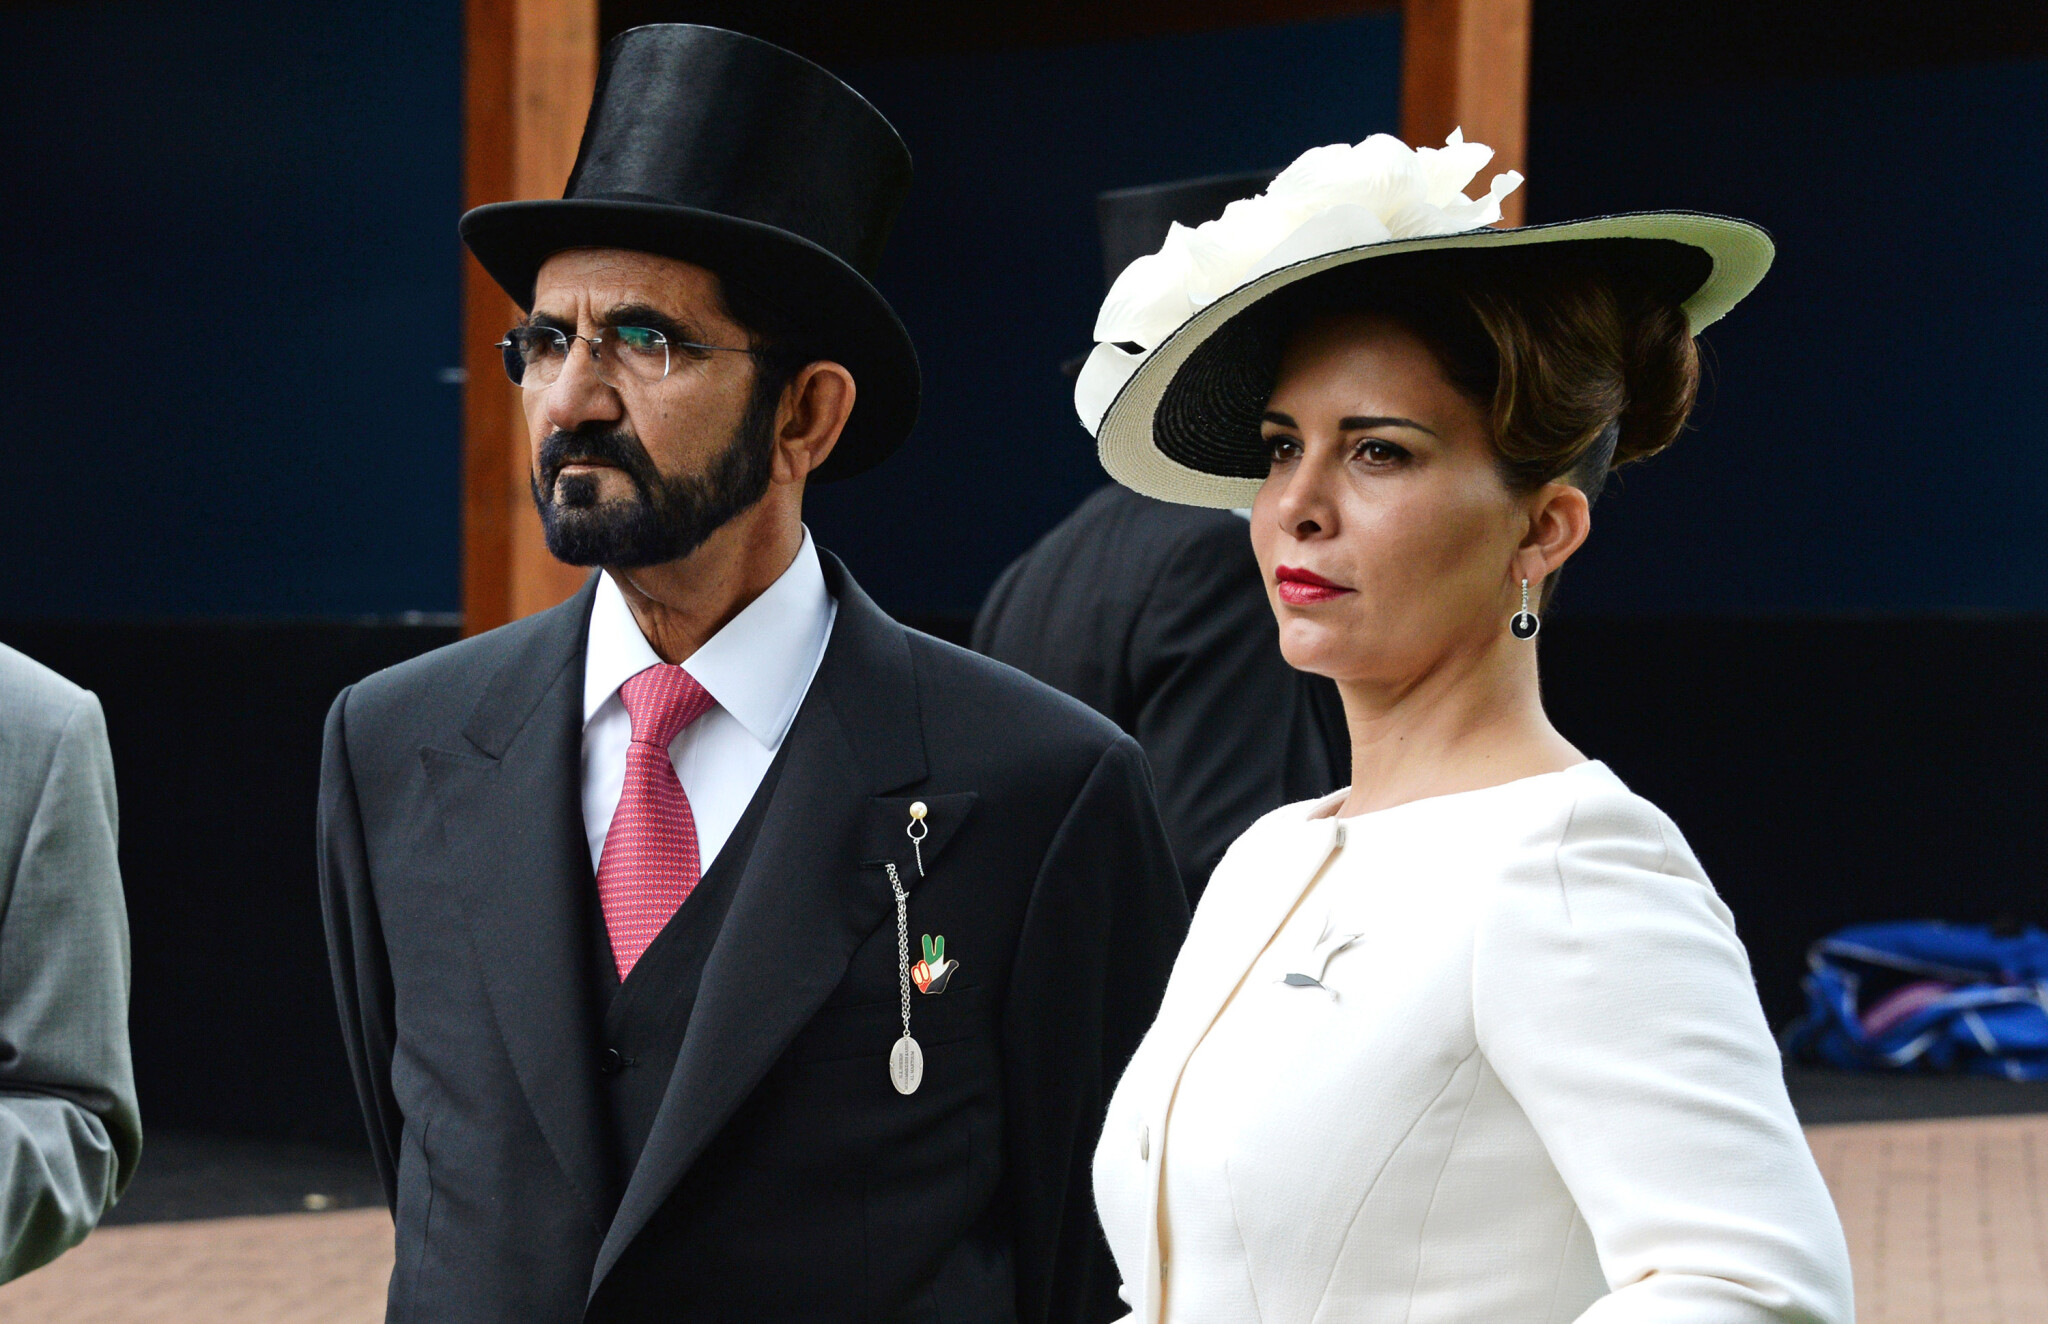 Šejk a princezna, ale pohádka to není. Vládce Dubaje označili za únosce, věznitele a tyrana